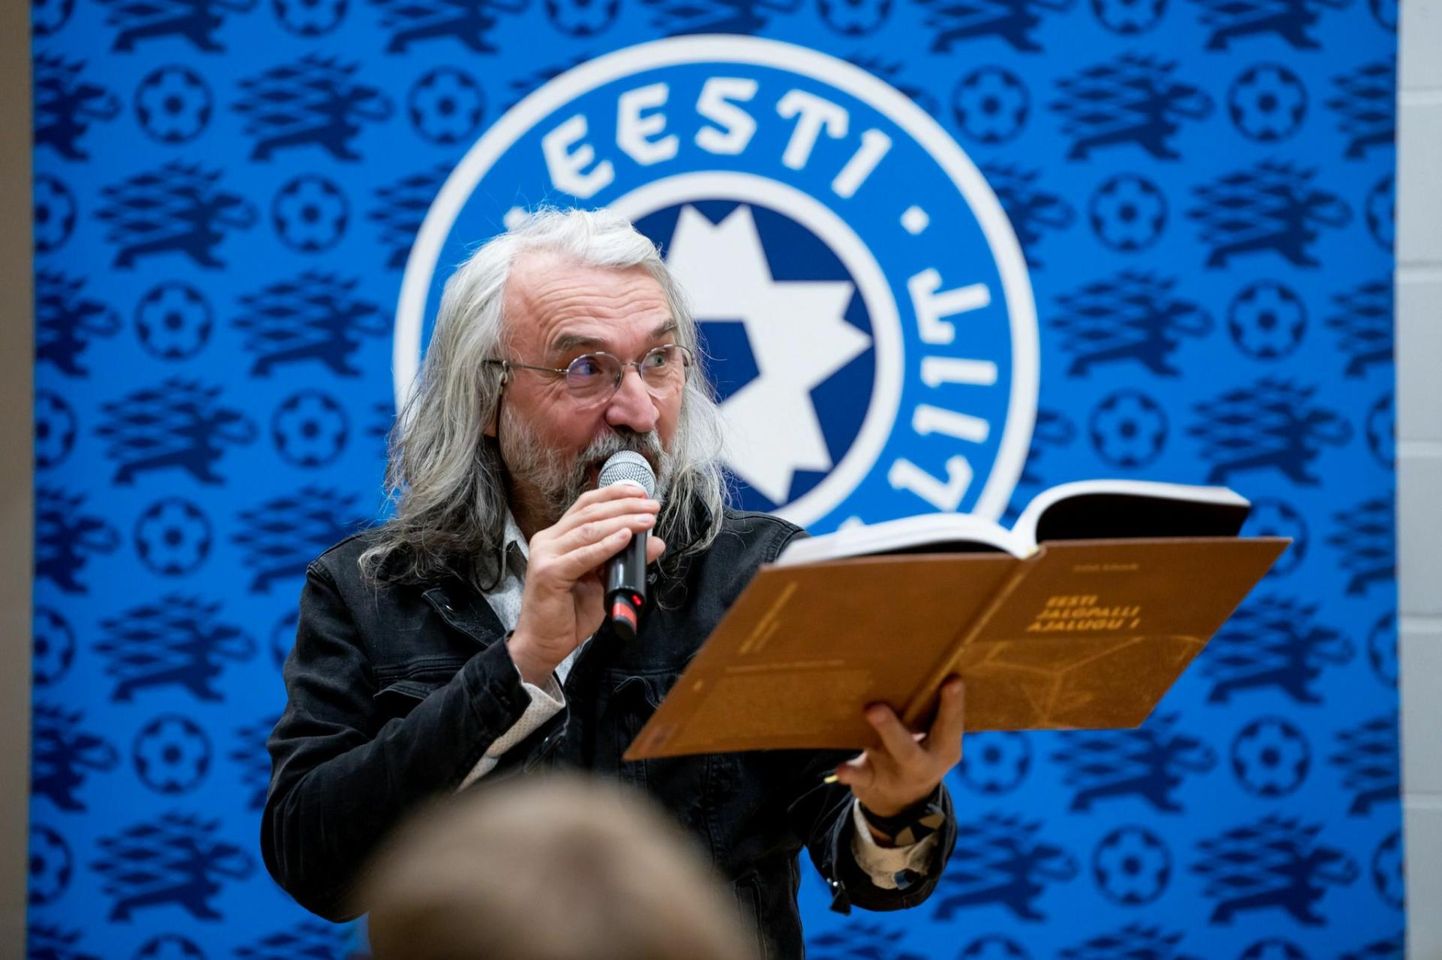 Президент ЭФС Айвар Похлак на презентации книги "История эстонского футбола".